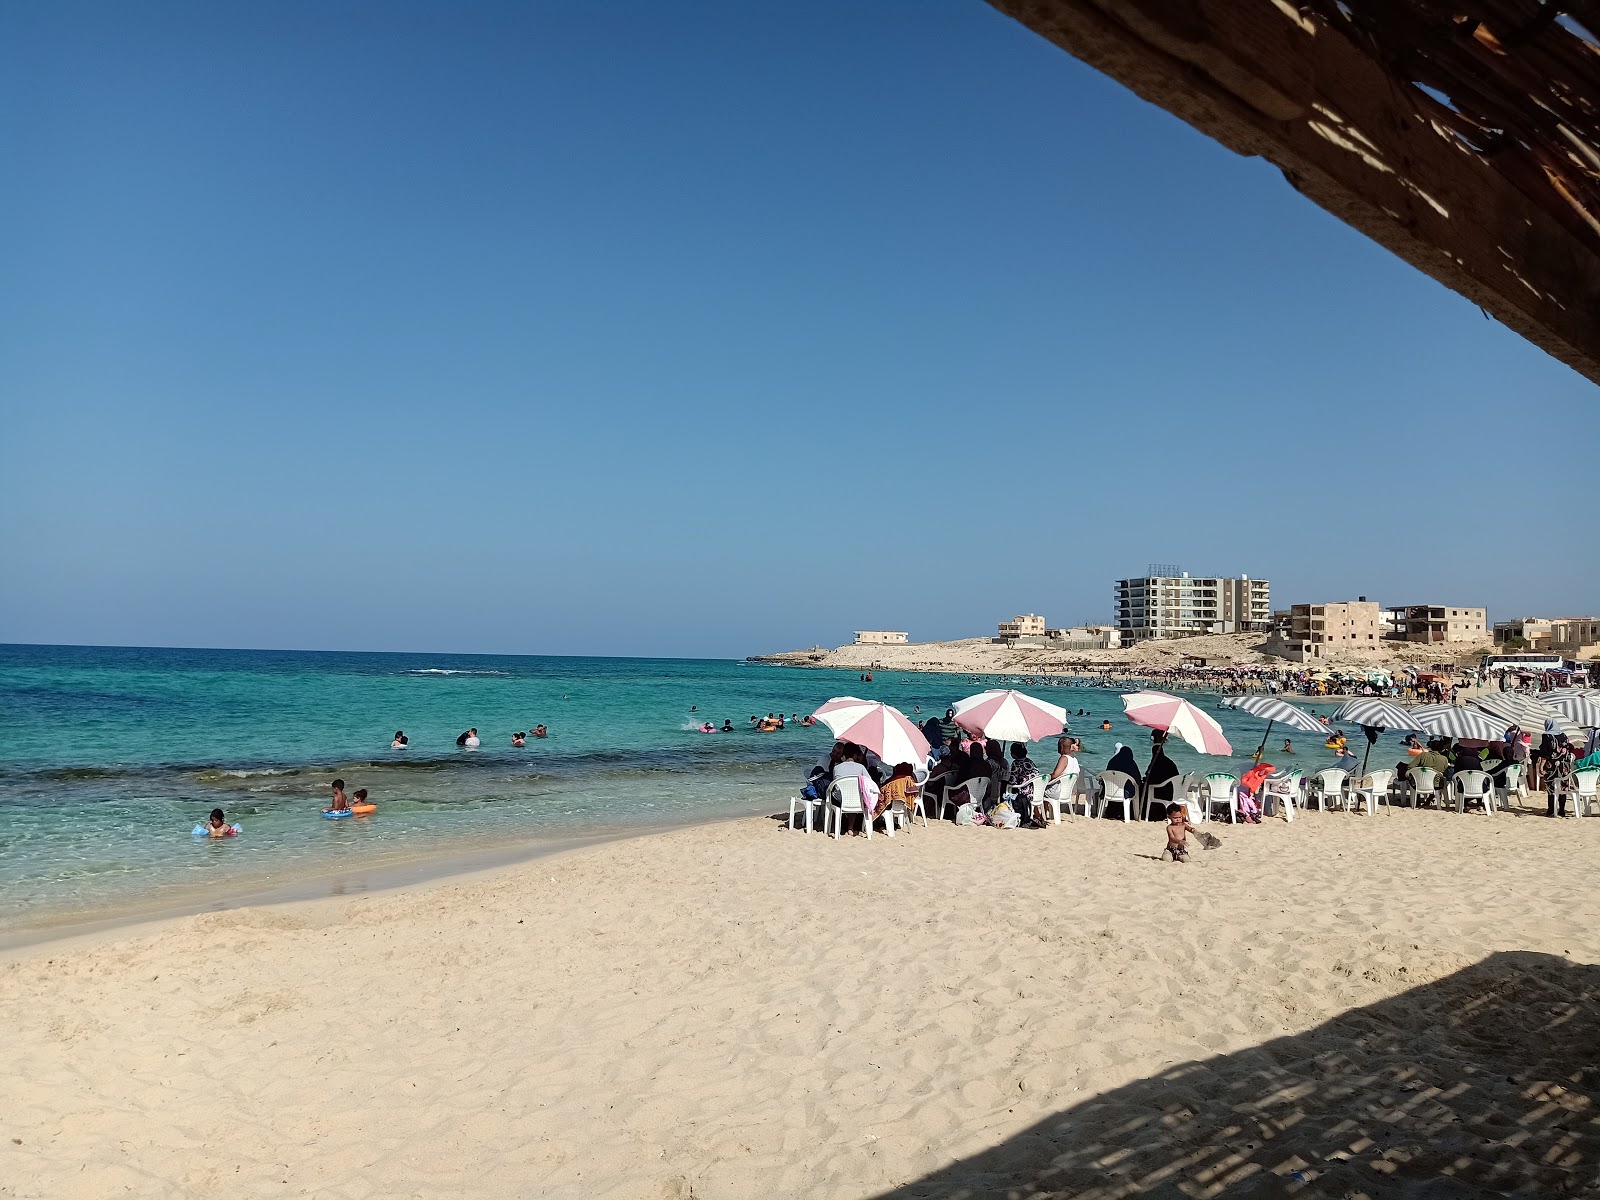 Fotografija Minaa Alhasheesh beach priljubljeno mesto med poznavalci sprostitve